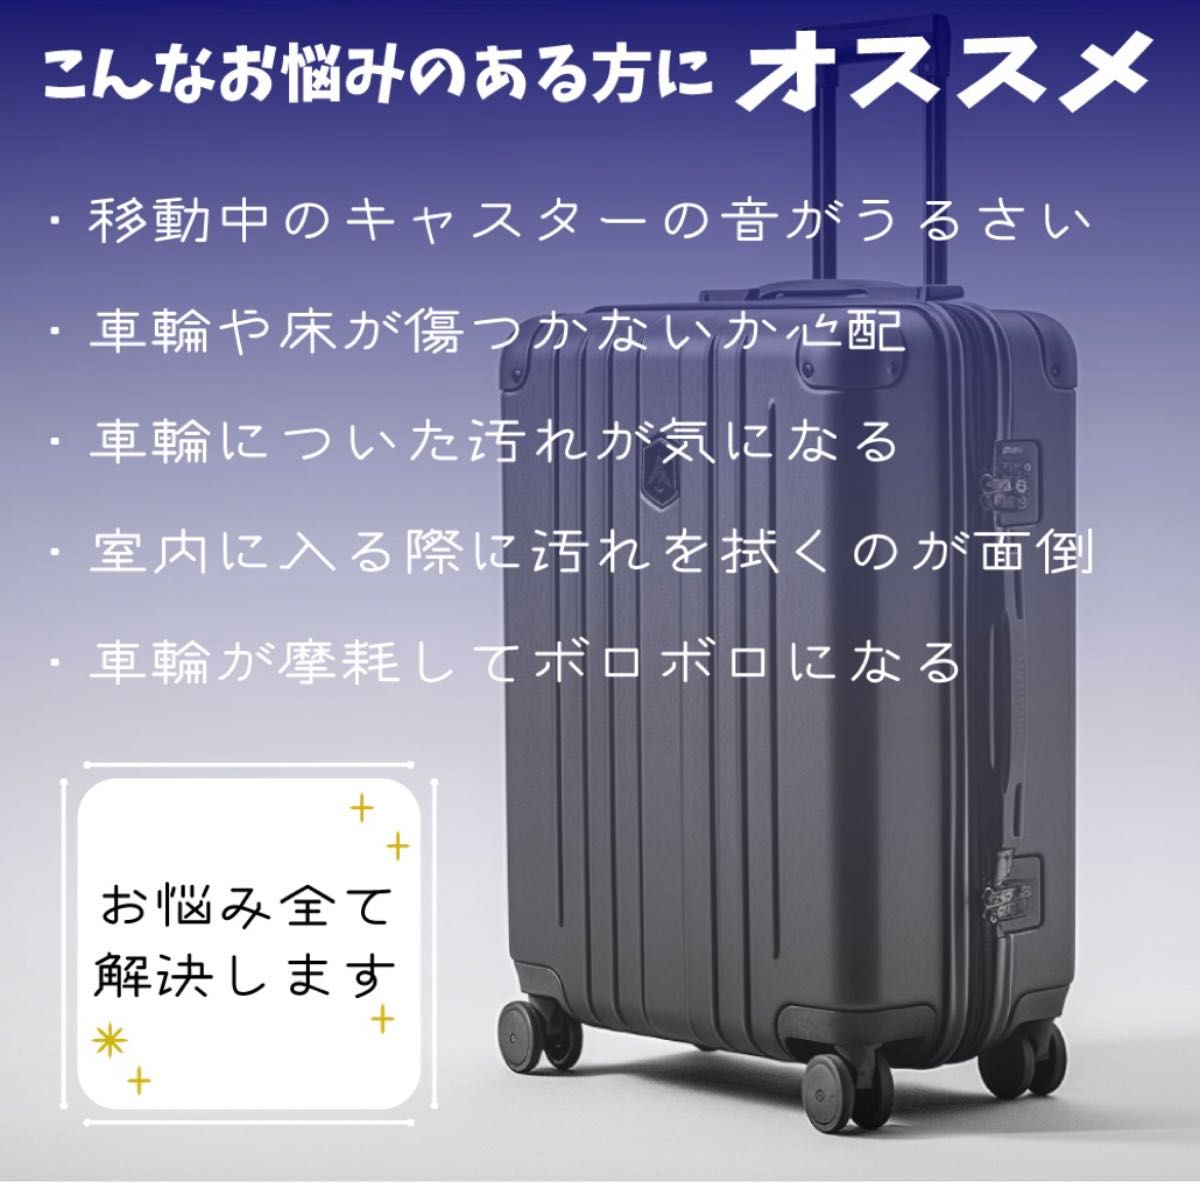 【黒8個】キャスターカバー スーツケース キャリーバッグ 保護 シリコンカバー 旅行 静音 傷防止 水洗い可能 取り付け簡単